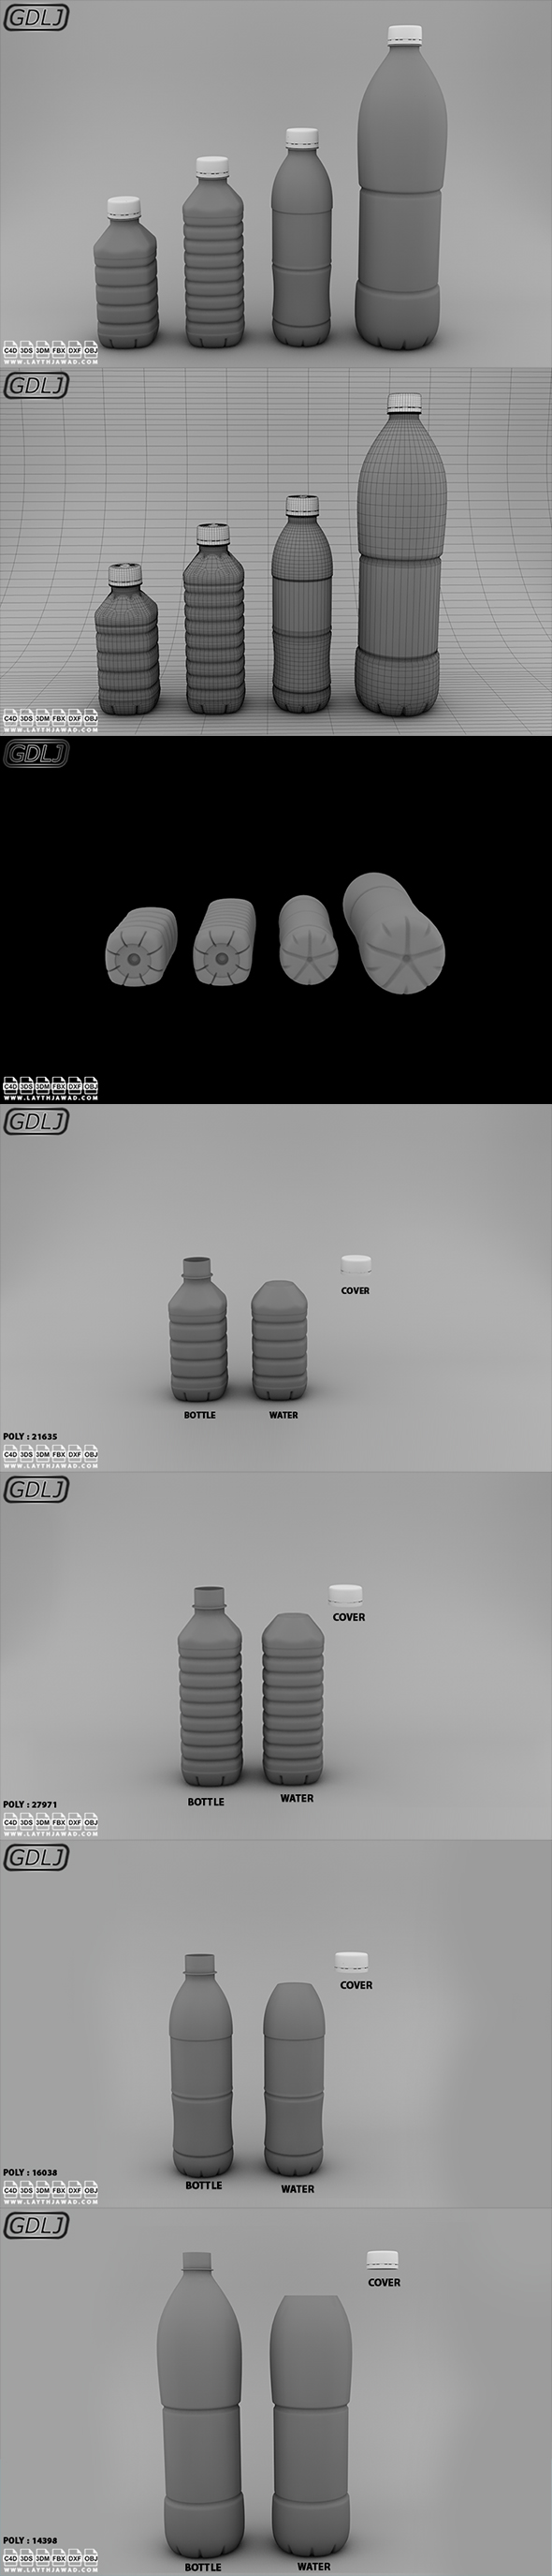 Water bottles Full - 3Docean 22944831